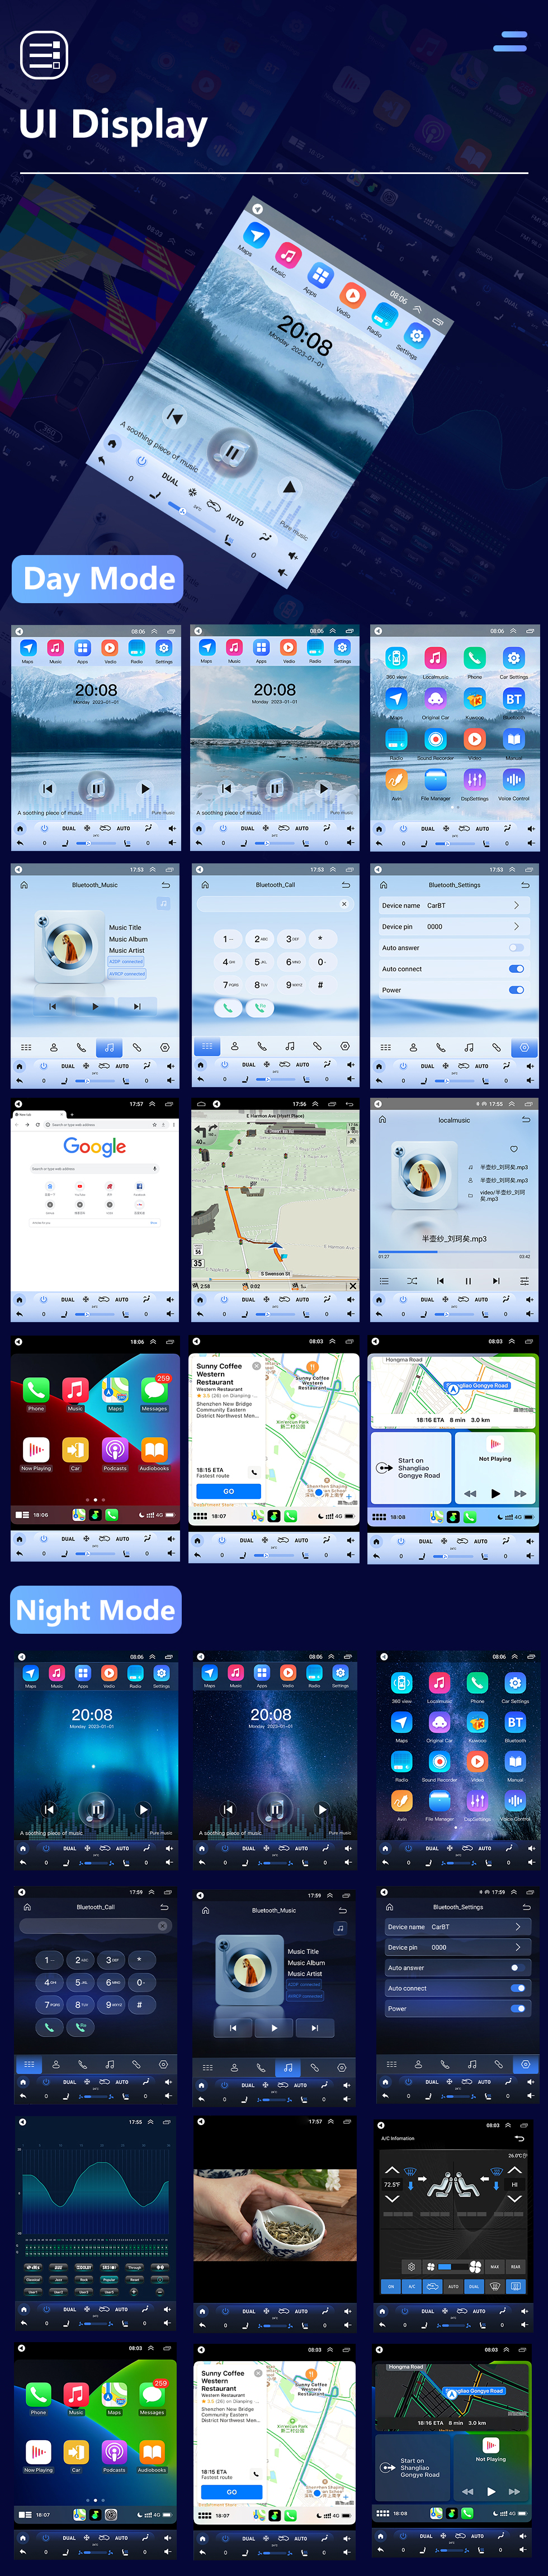 Seicane 9.7 pulgadas Android 10.0 2013-2017 Kia K3 Radio de navegación GPS con pantalla táctil HD Soporte Bluetooth Carplay